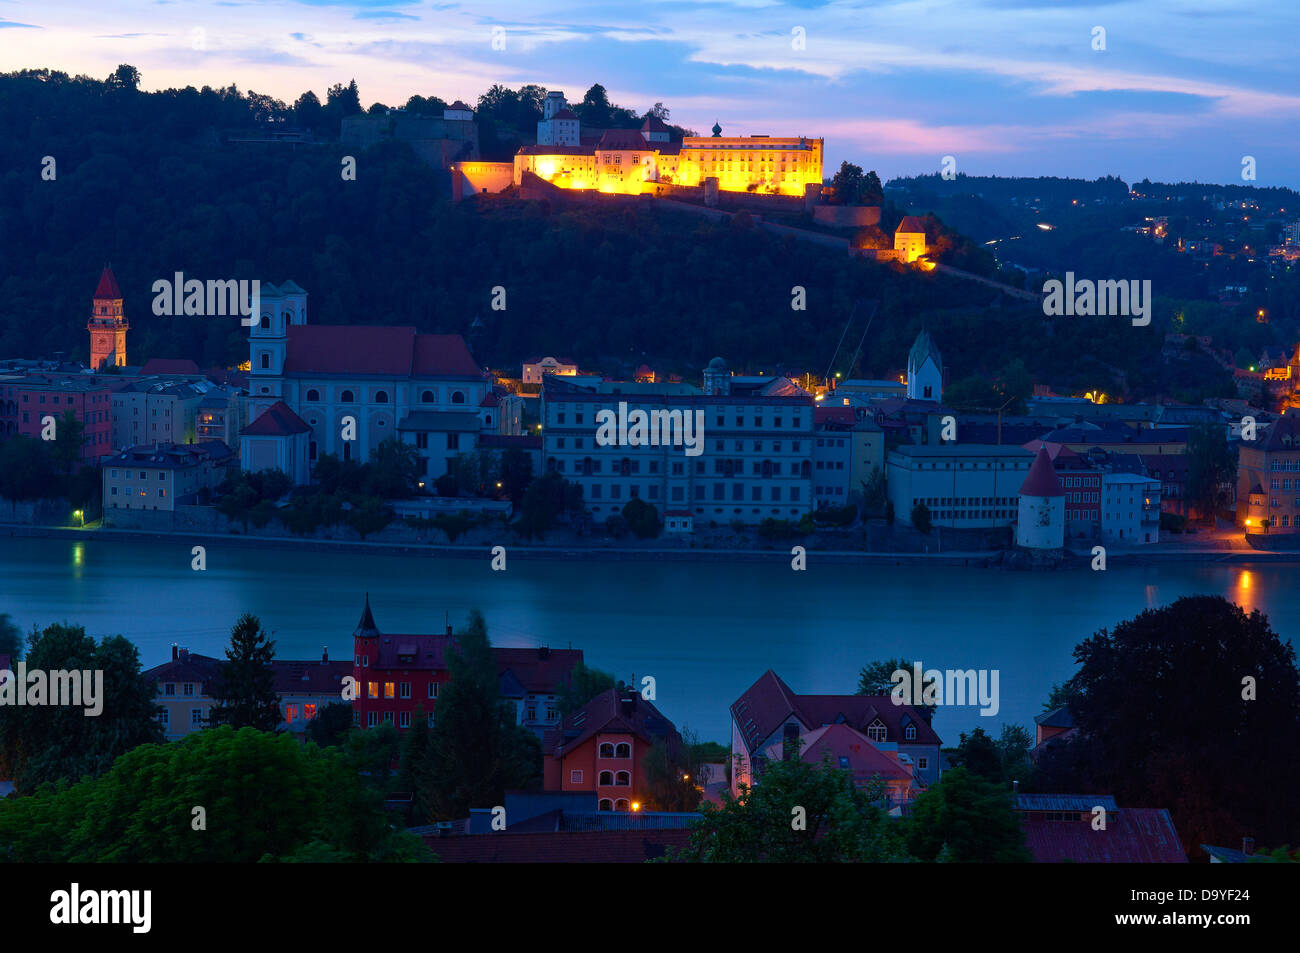 Passau, River Inn, Veste Oberhaus Festung, untere Bayern, Bayern, Deutschland, Europa, Stockfoto